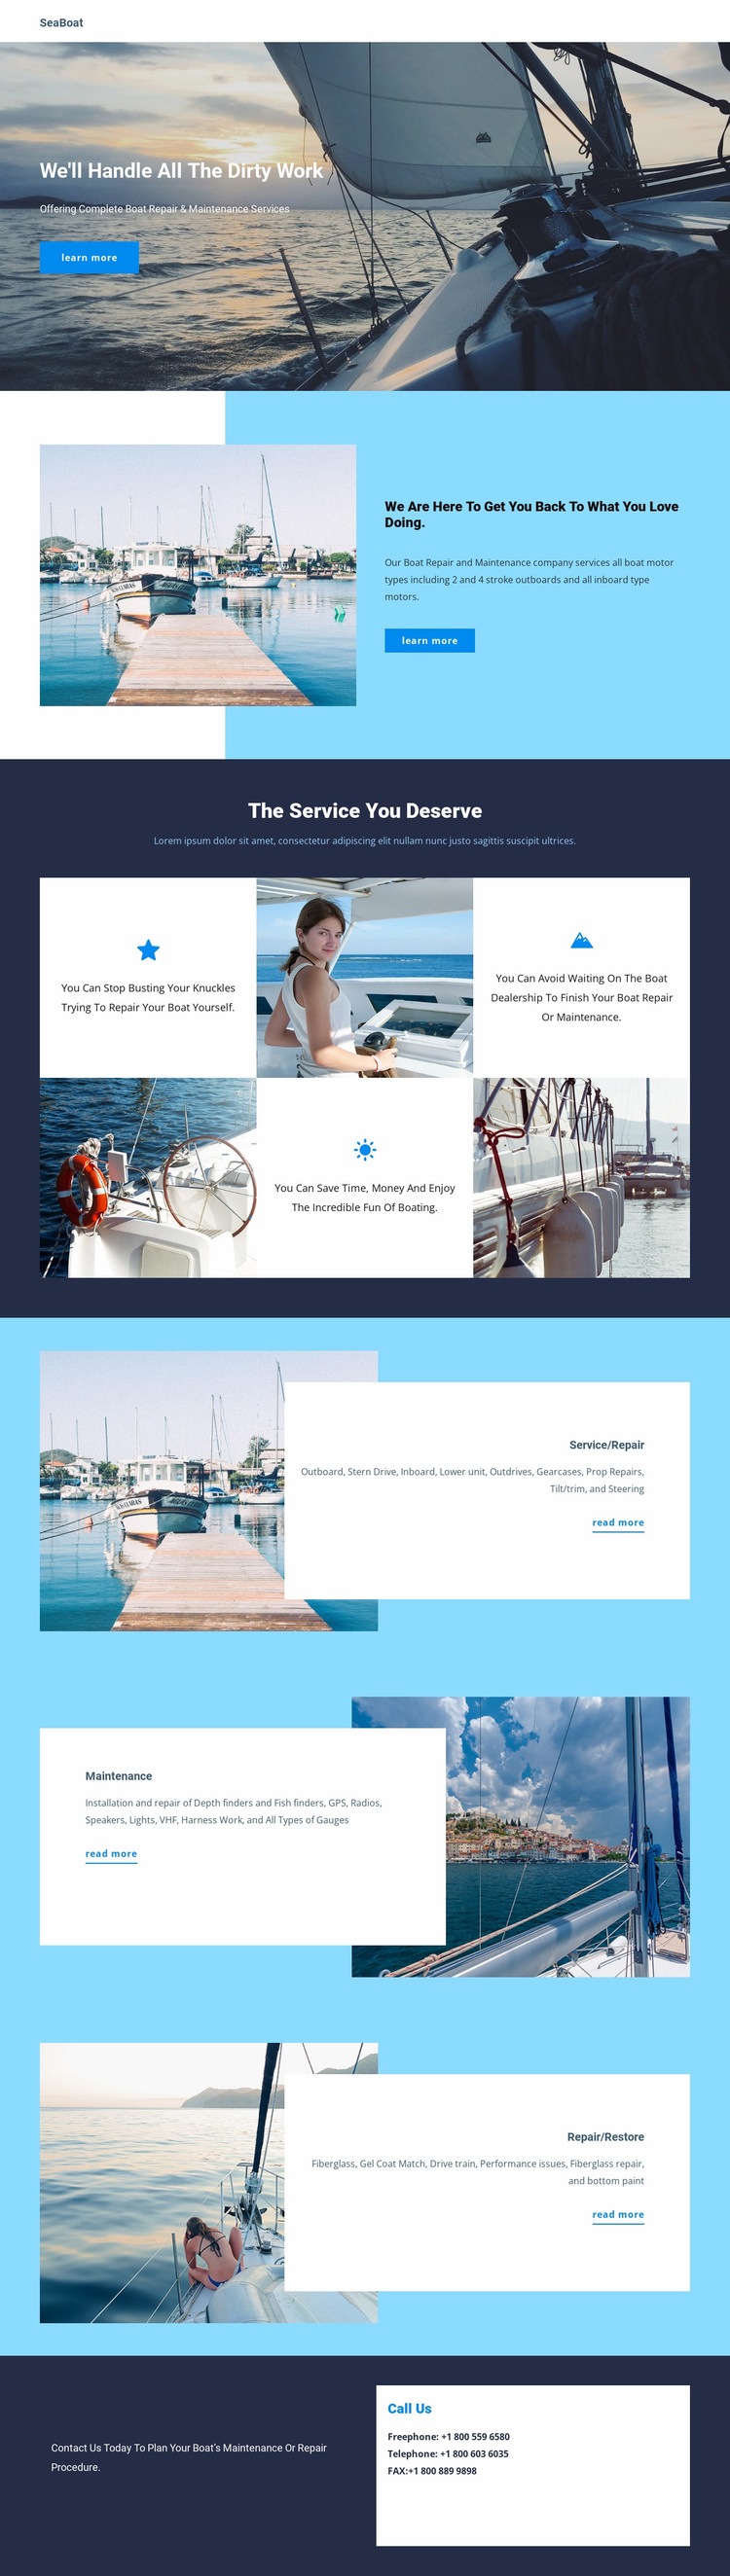 Travel on Seaboat Website Design